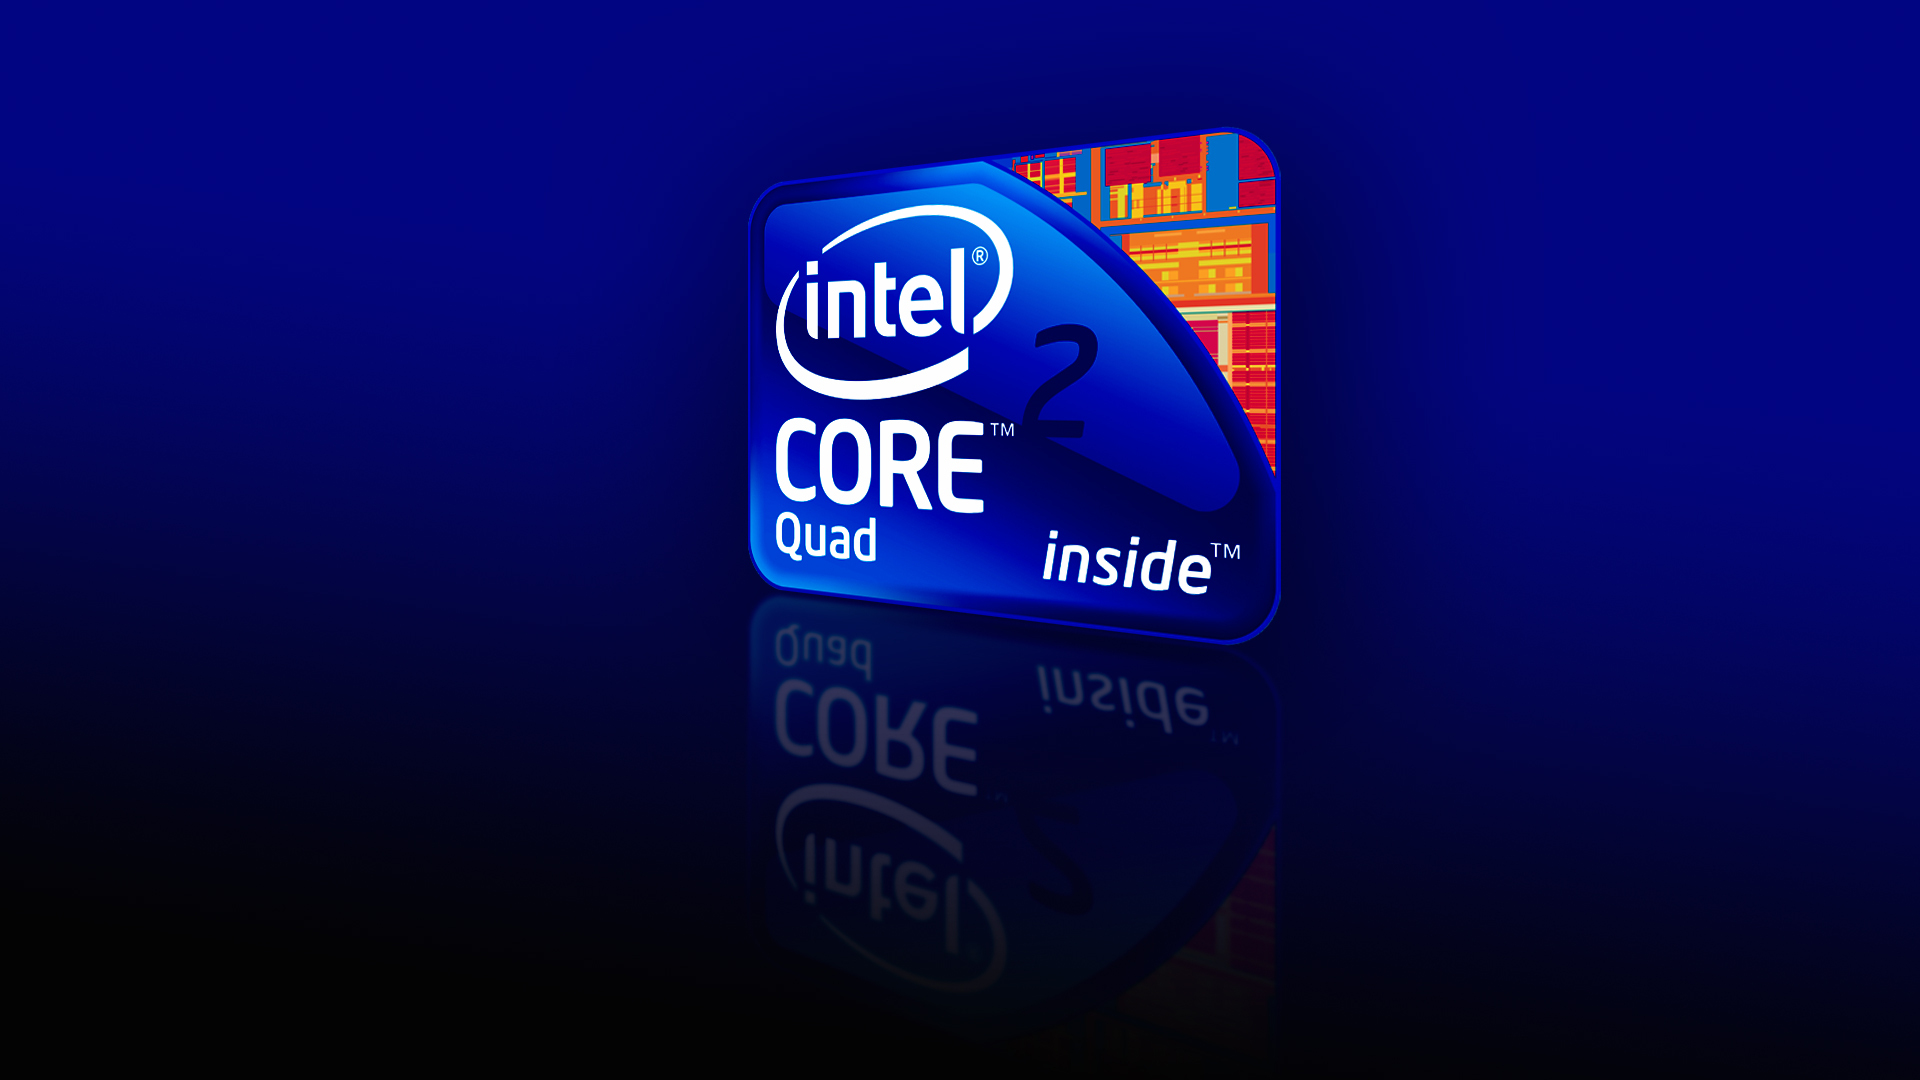 Intel Core Quad I7 Logo 1080p Wallpaper Rumah It